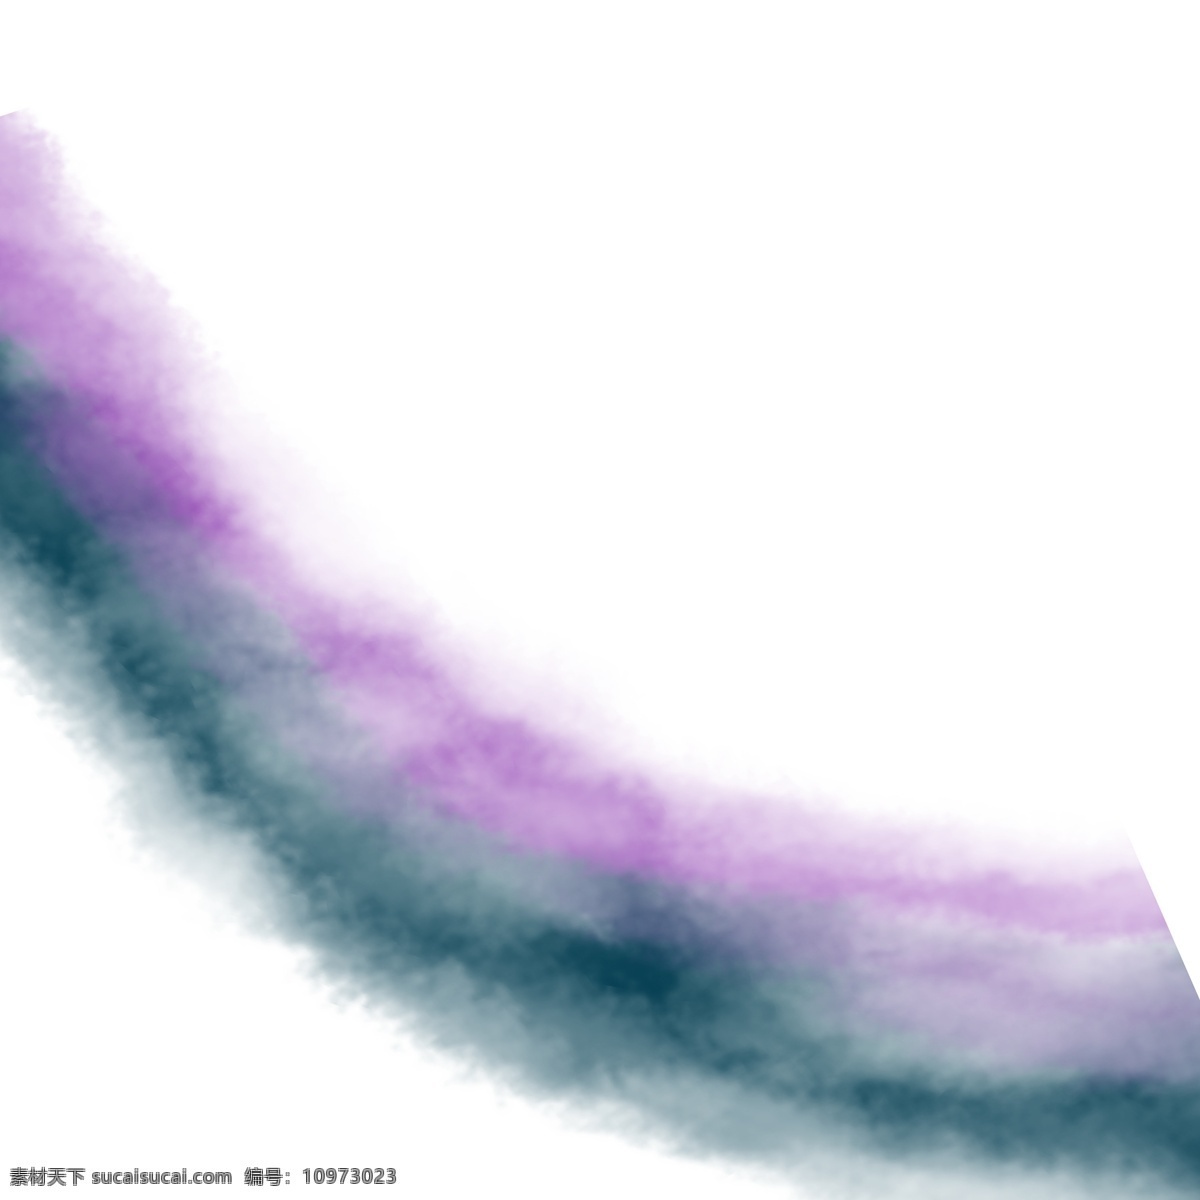 紫色 烟雾 渐变 图形 卡通烟雾 紫色烟雾 烟雾渐变 卡通插图 创意卡通下载 插图 png图下载